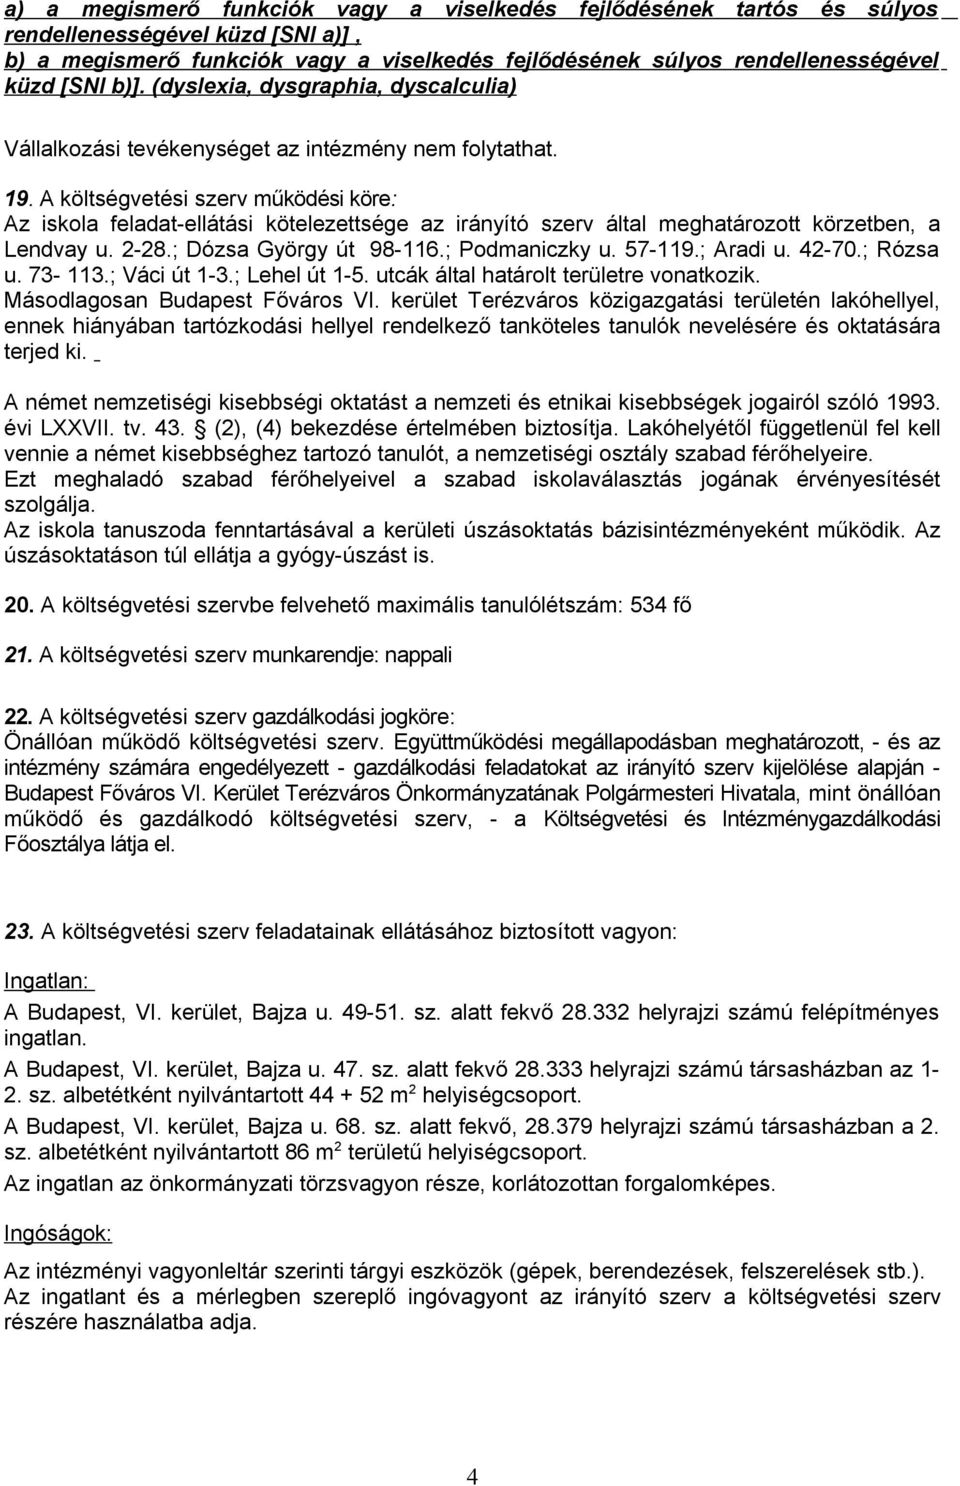 A költségvetési szerv működési köre: Az iskola feladat-ellátási kötelezettsége az irányító szerv által meghatározott körzetben, a Lendvay u. 2-28.; Dózsa György út 98-116.; Podmaniczky u. 57-119.